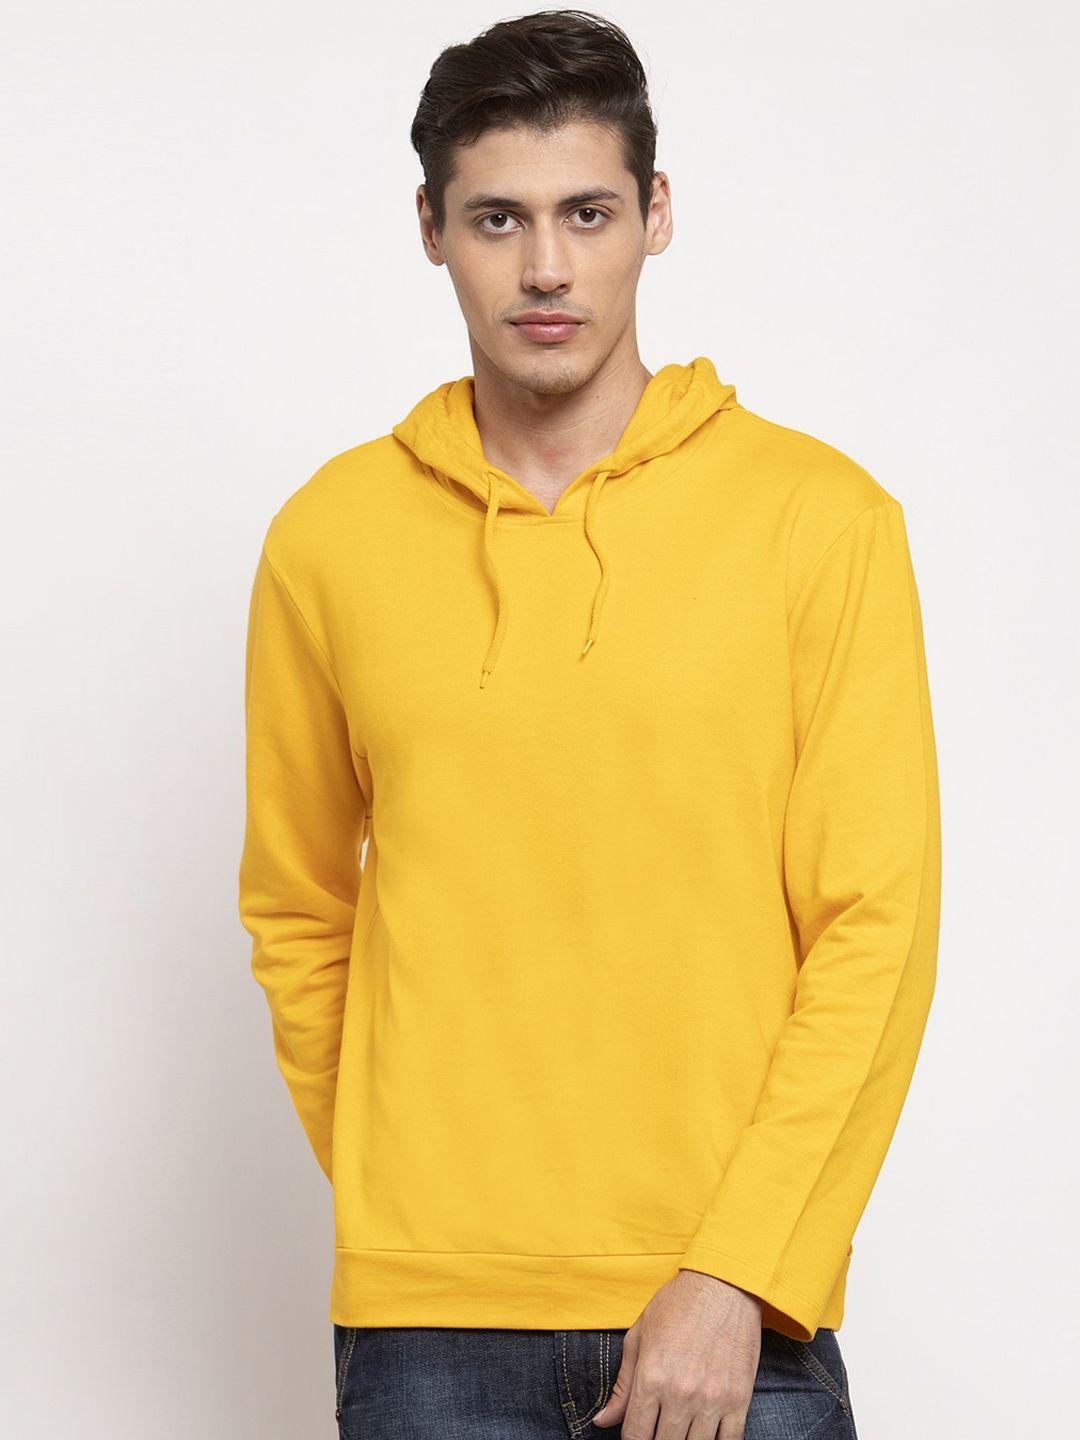 door74-men-yellow-hooded-sweatshirt